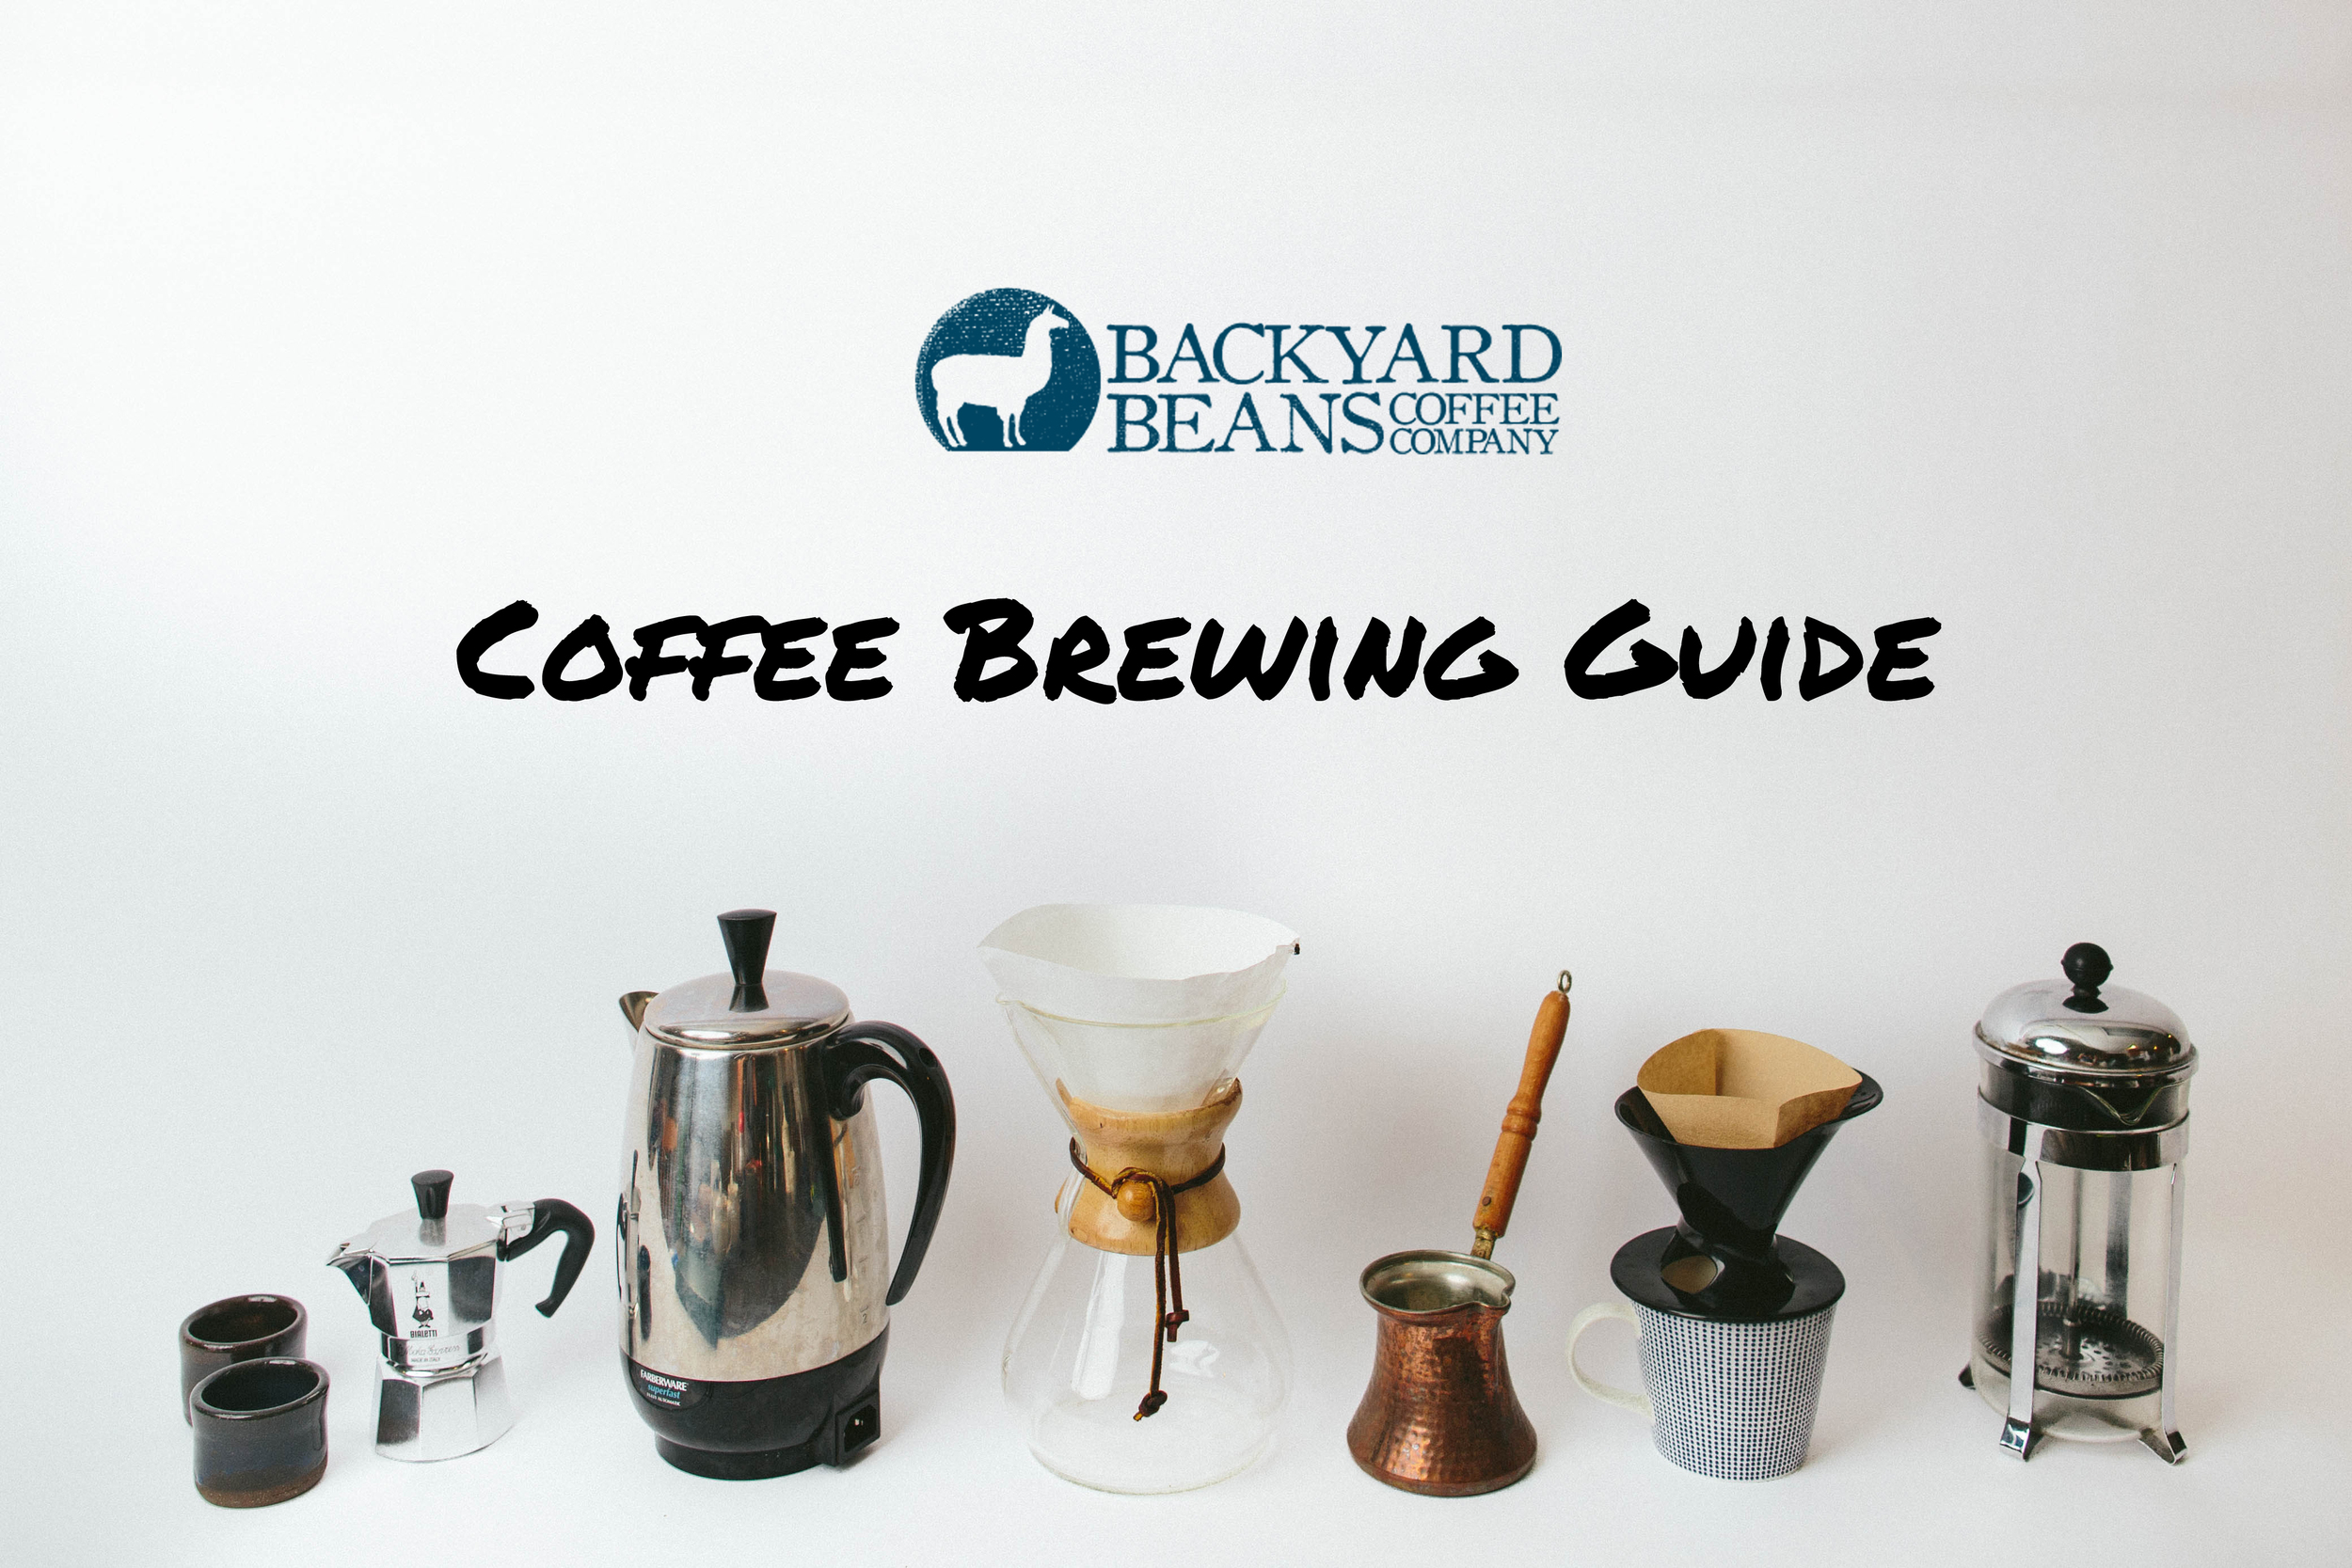 https://images.squarespace-cdn.com/content/v1/5341526de4b089b274aedd6e/1447727198294-CKYBHMS9IQVGPPGOLR1I/Backyard+Beans+Coffee+Co.+Brewing+Guide+Blog+Post